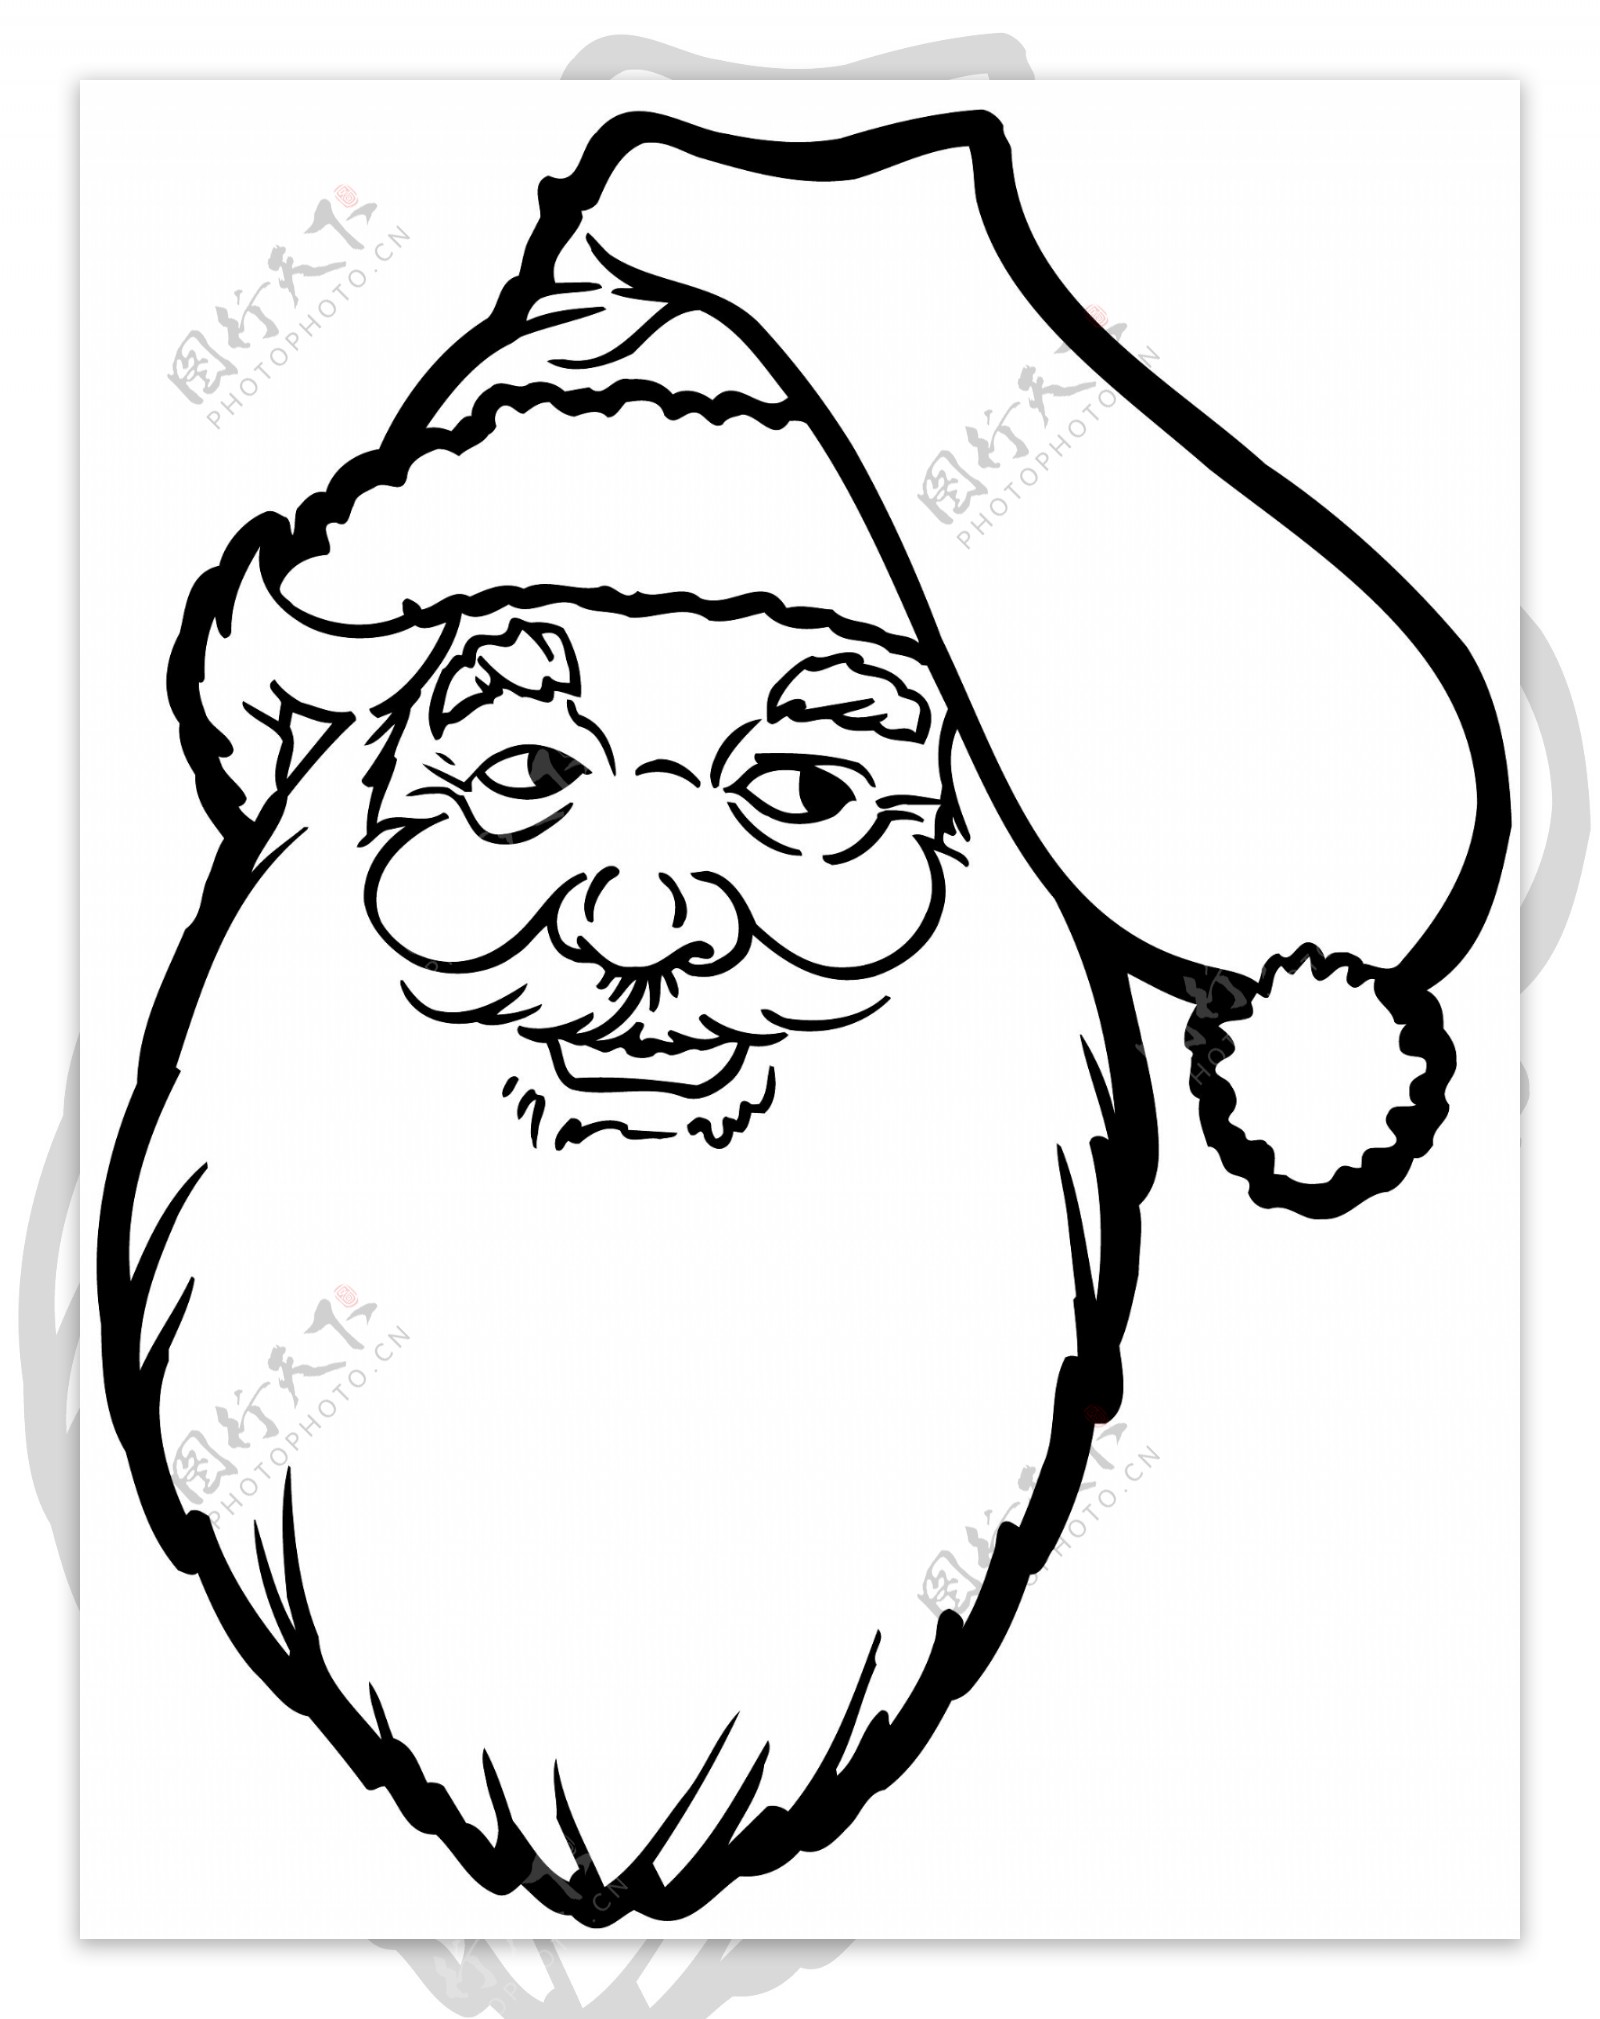 圣诞老人头像卡通头像矢量素材EPS格式0030